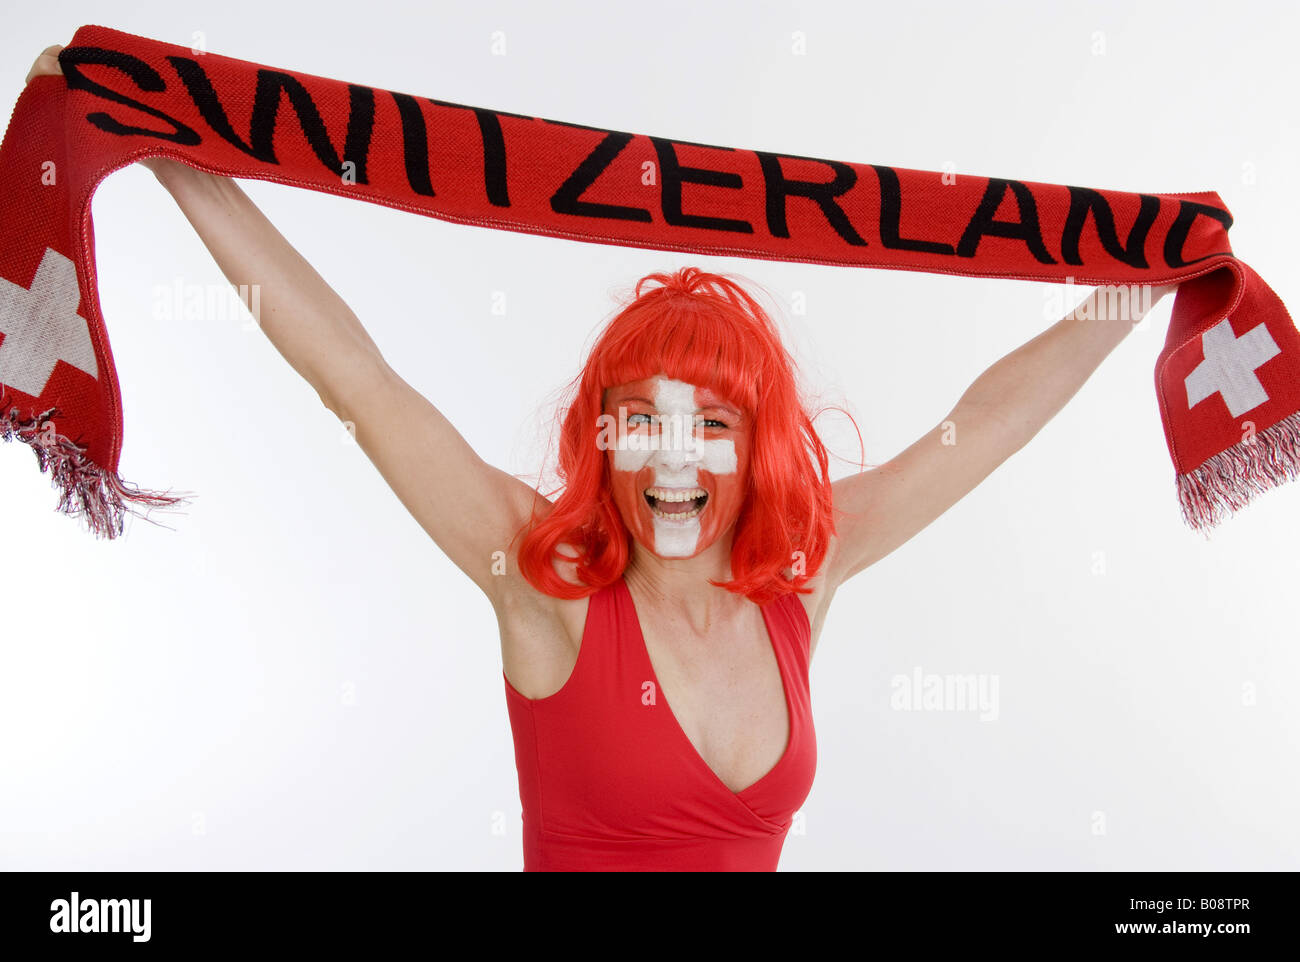 woman as Switzerland fan, holding a fan scarf over her head Stock Photo